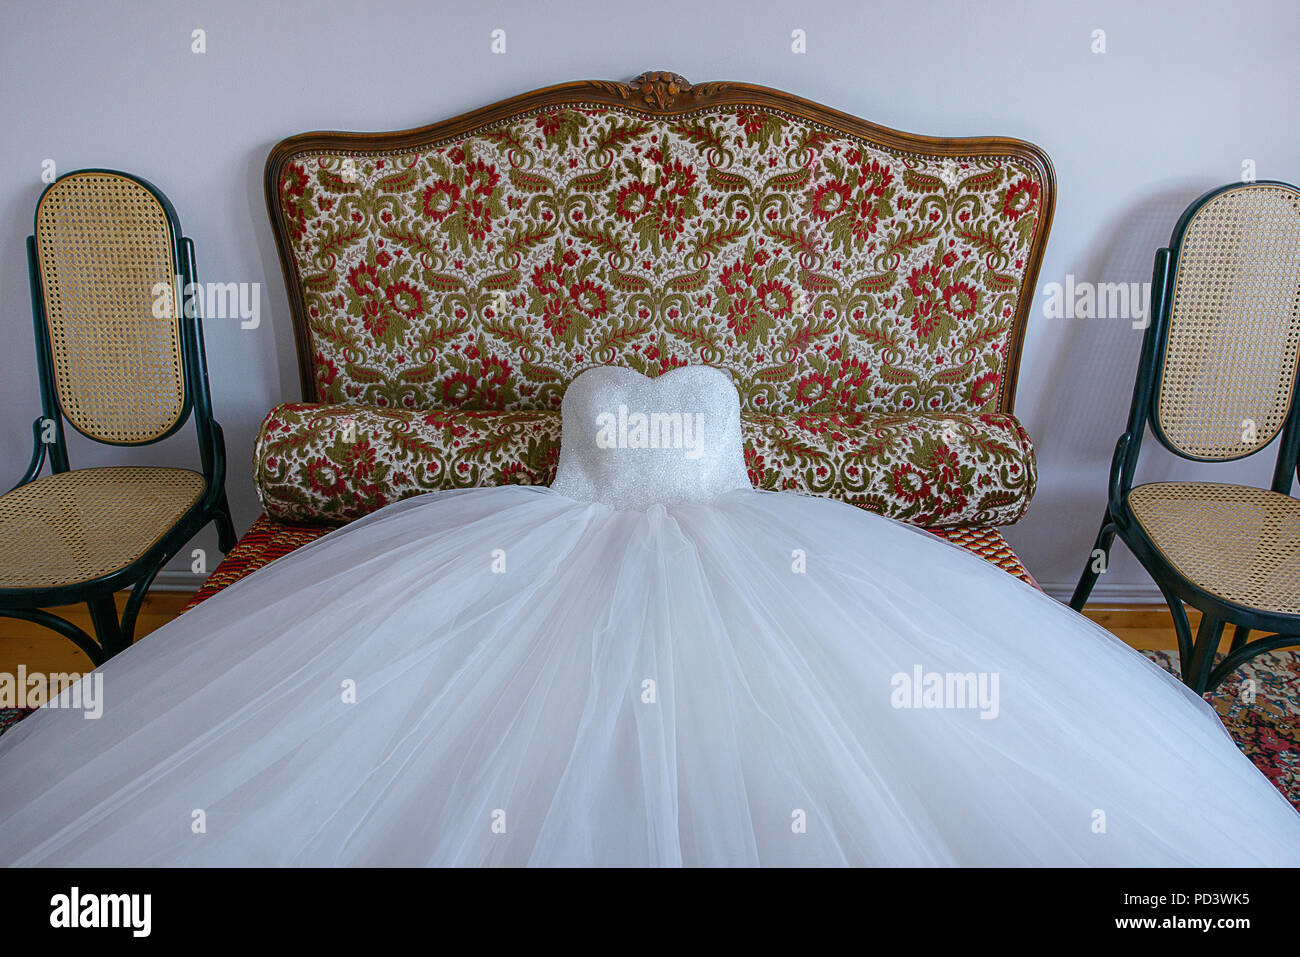 Atemberaubendes Ballkleid Hochzeitskleid verteilen sich auf ein kleines Sofa, bereit für die Braut in der Vorbereitung für den grossen Tag Stockfoto